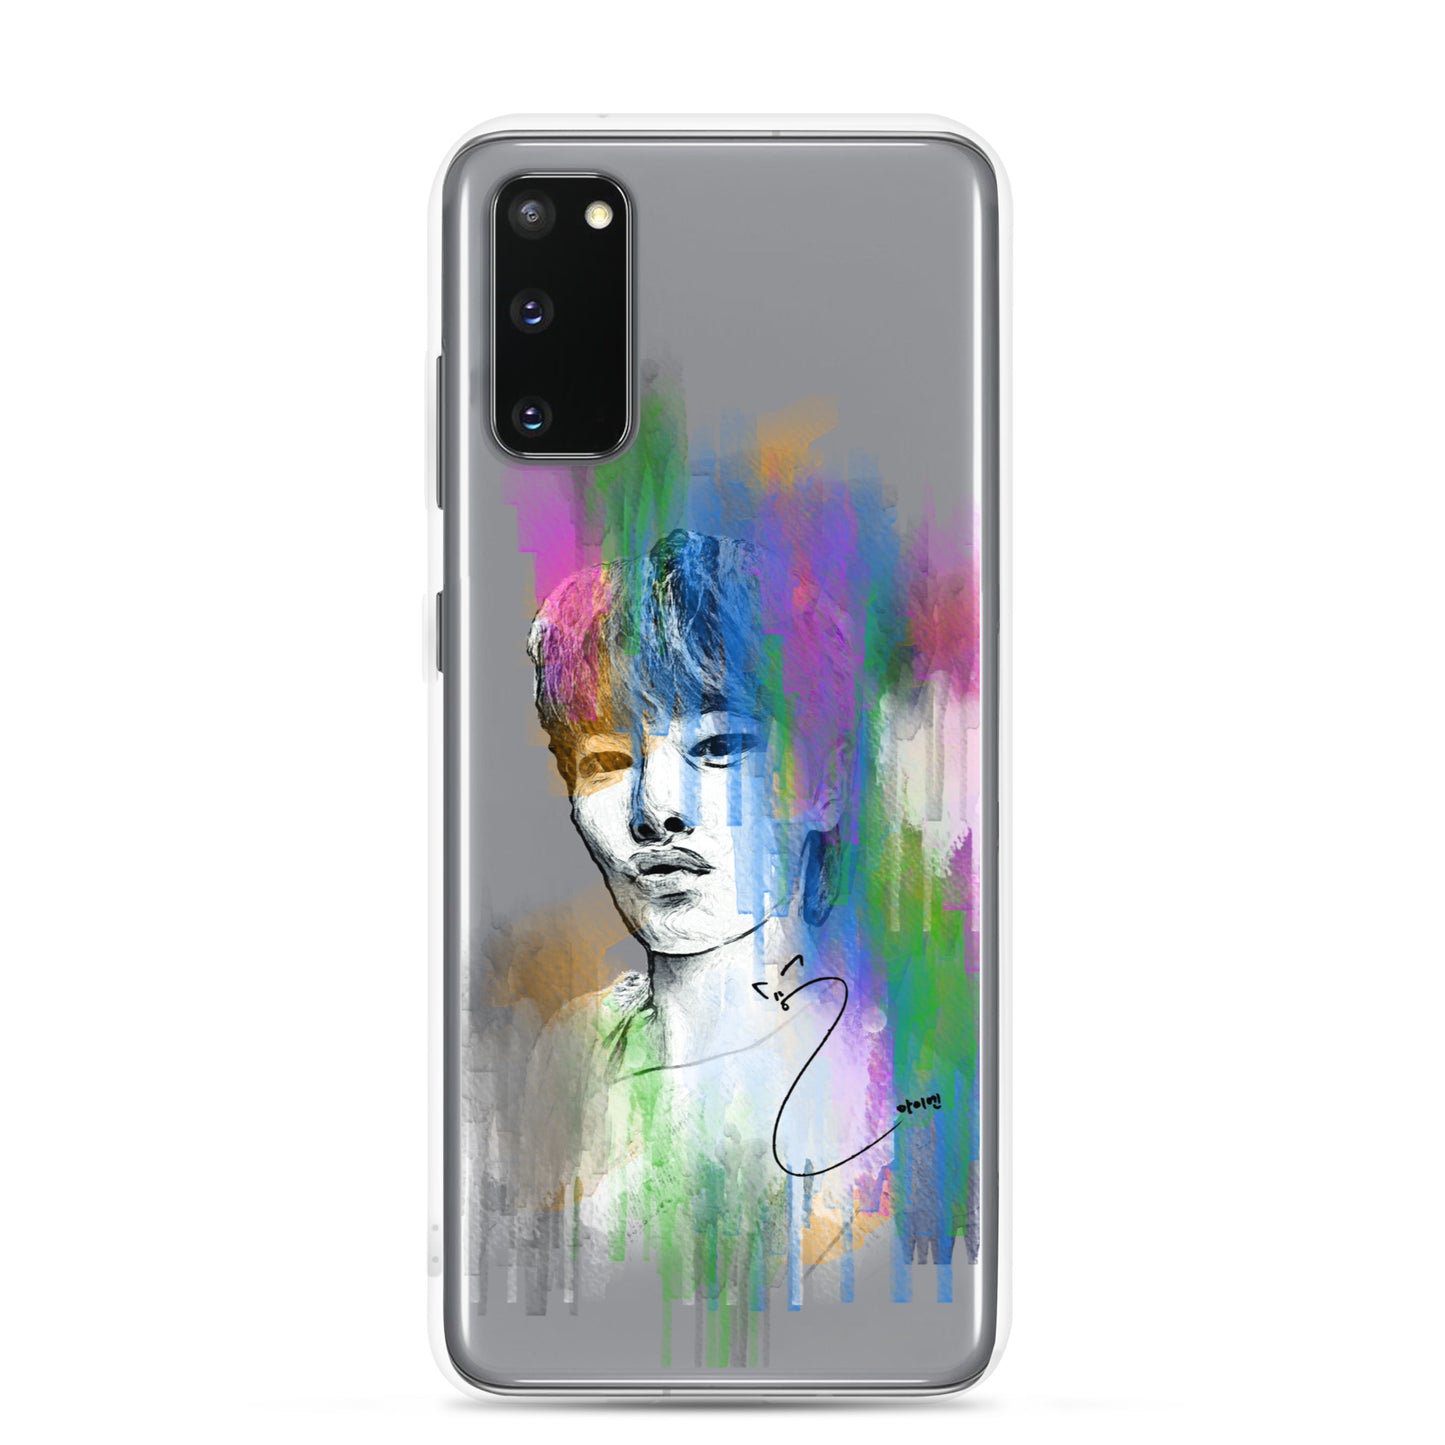 Stray Kids I.N, Yang Jeong-in Waterpaint portrait Samsung Case